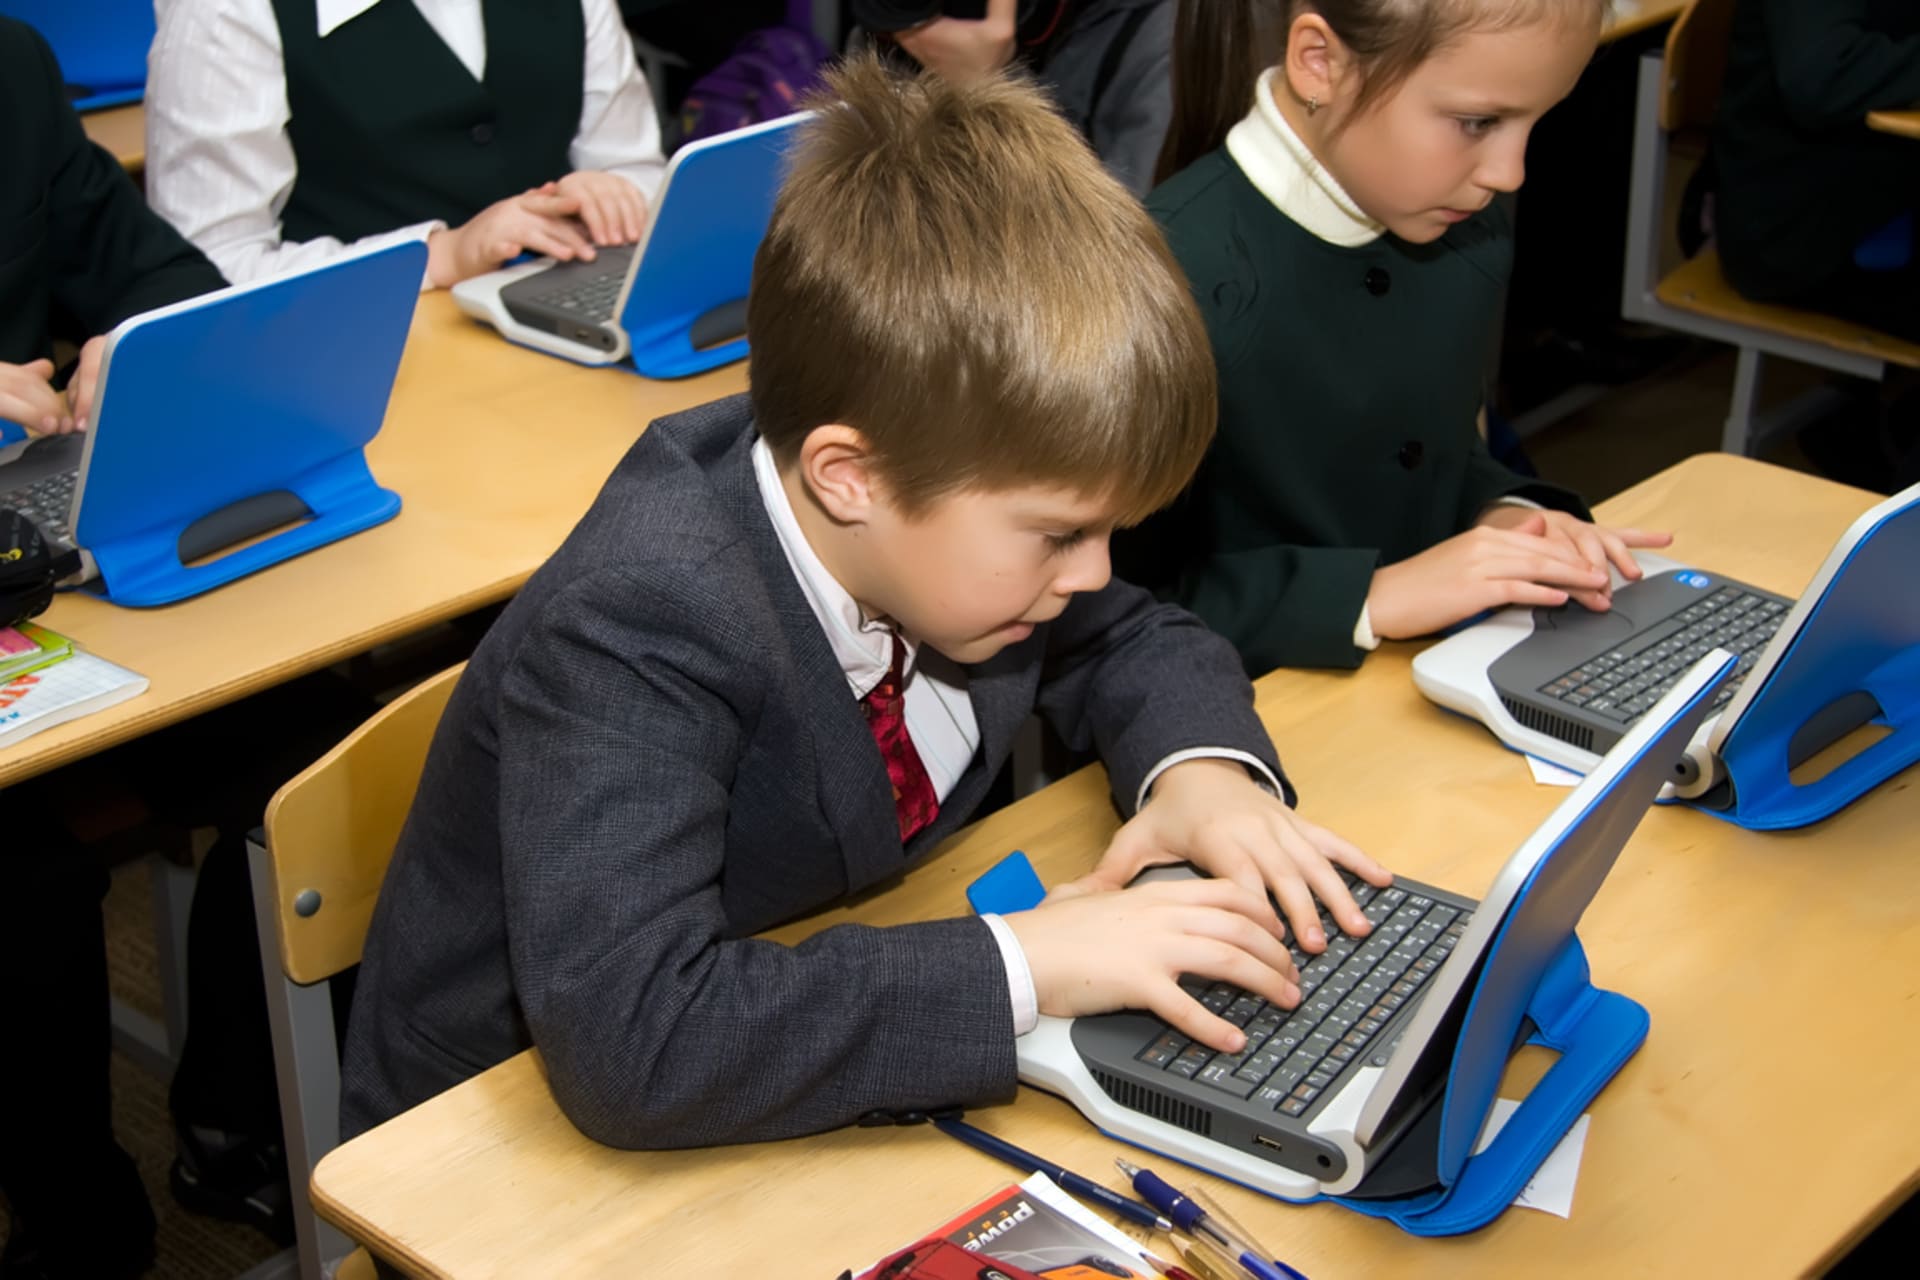 Компьютер дети школа